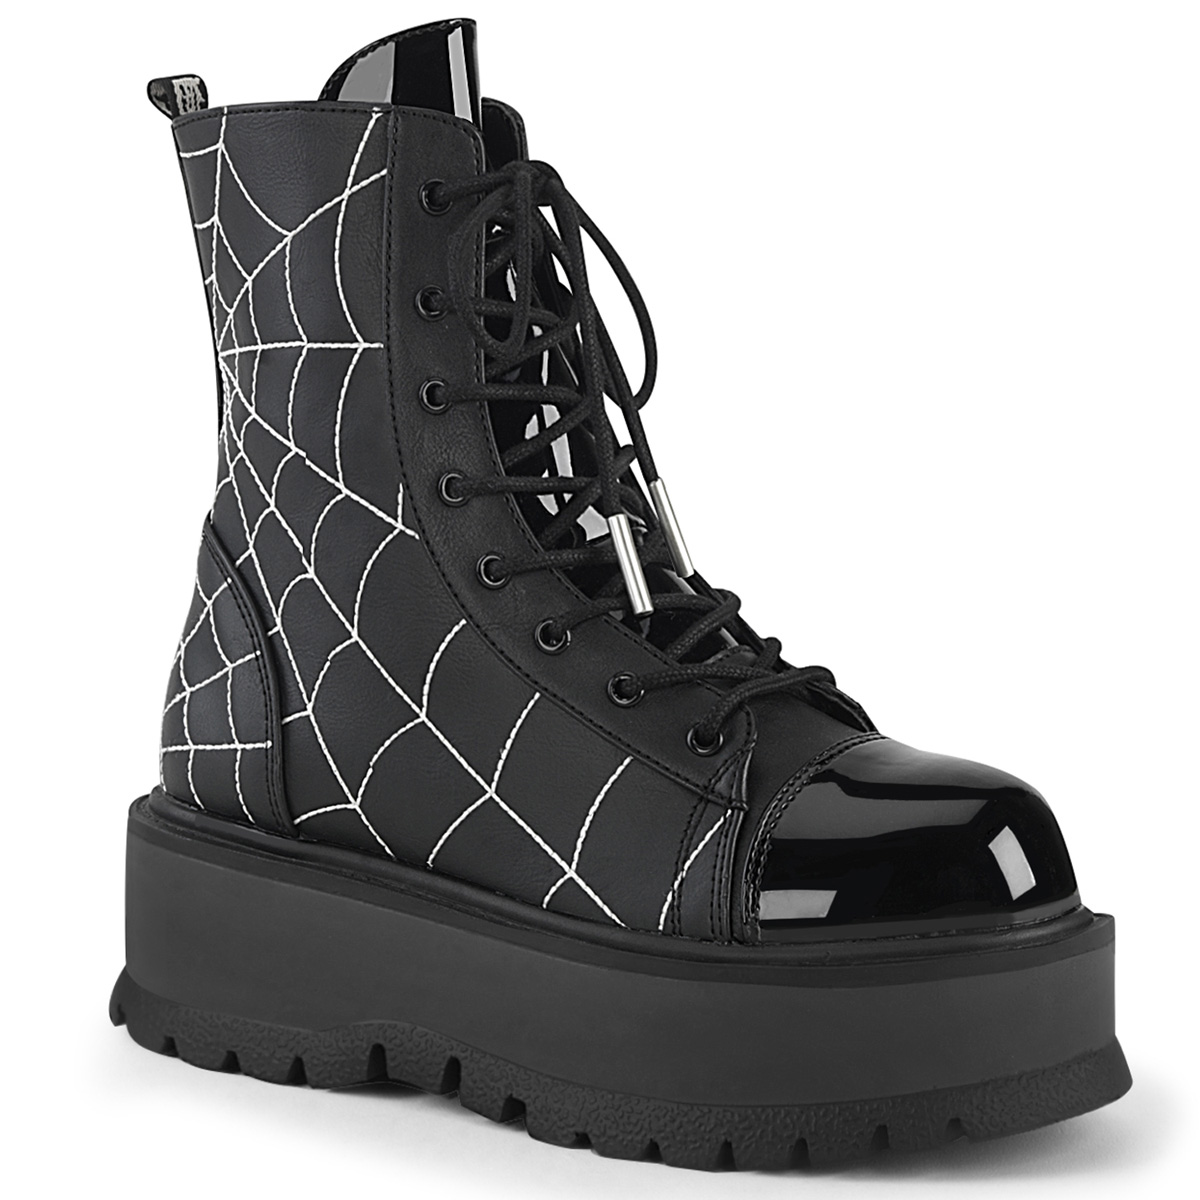 Slacker-88 Black Vegan Leather Boot